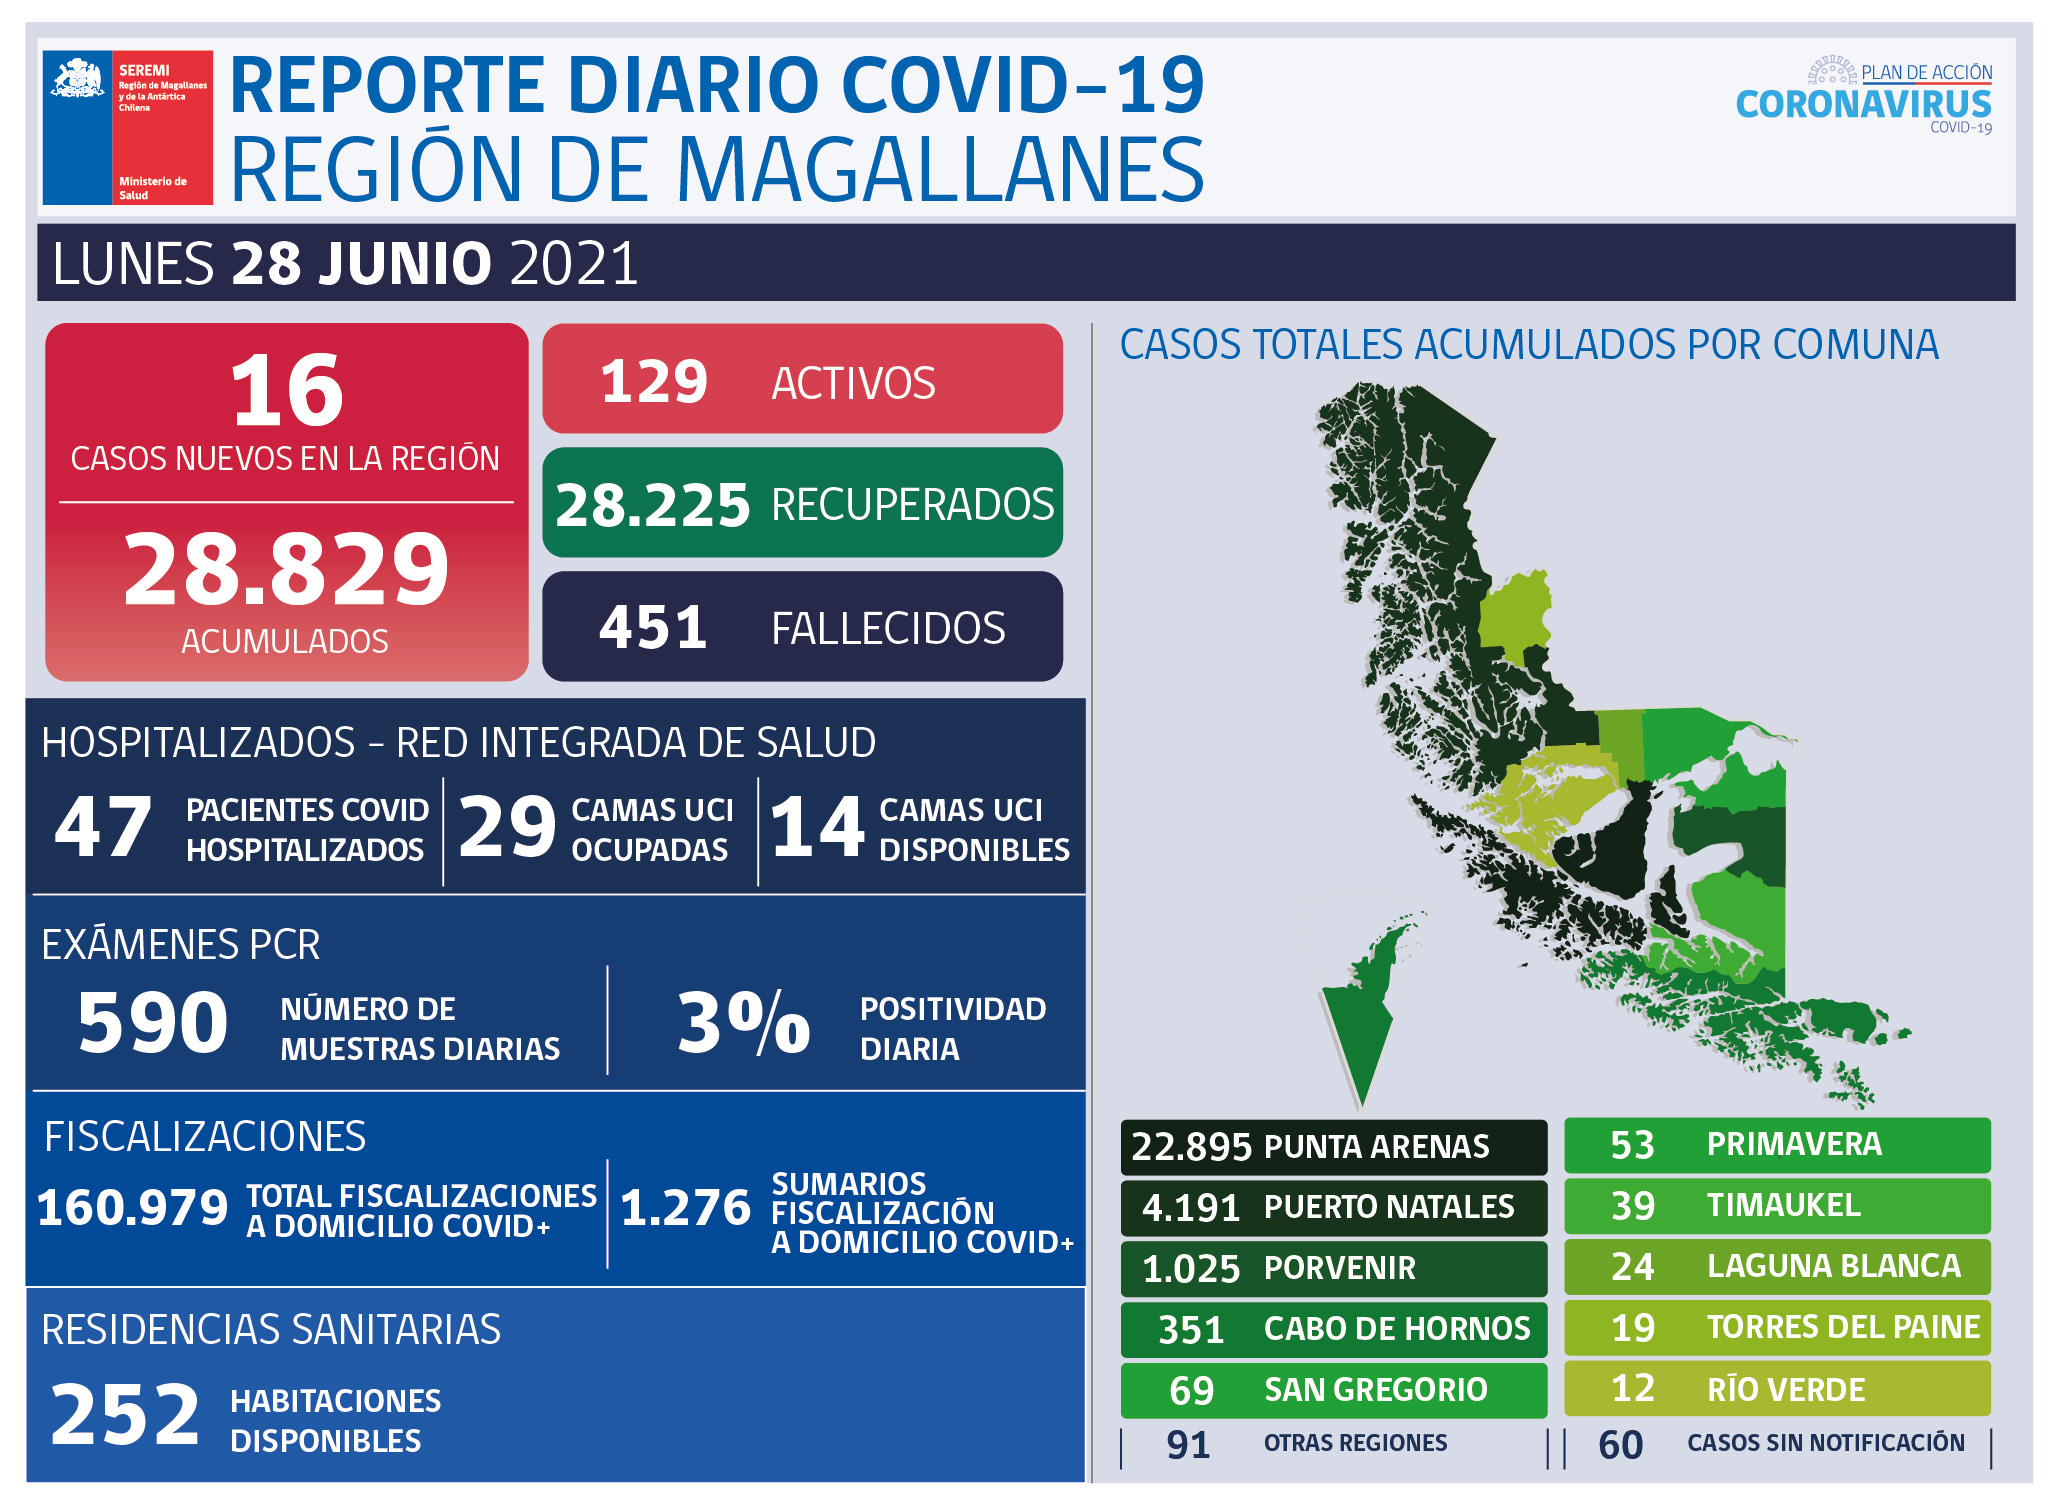 16 nuevos casos de covid19 se registran en las recientes 24 horas en Magallanes